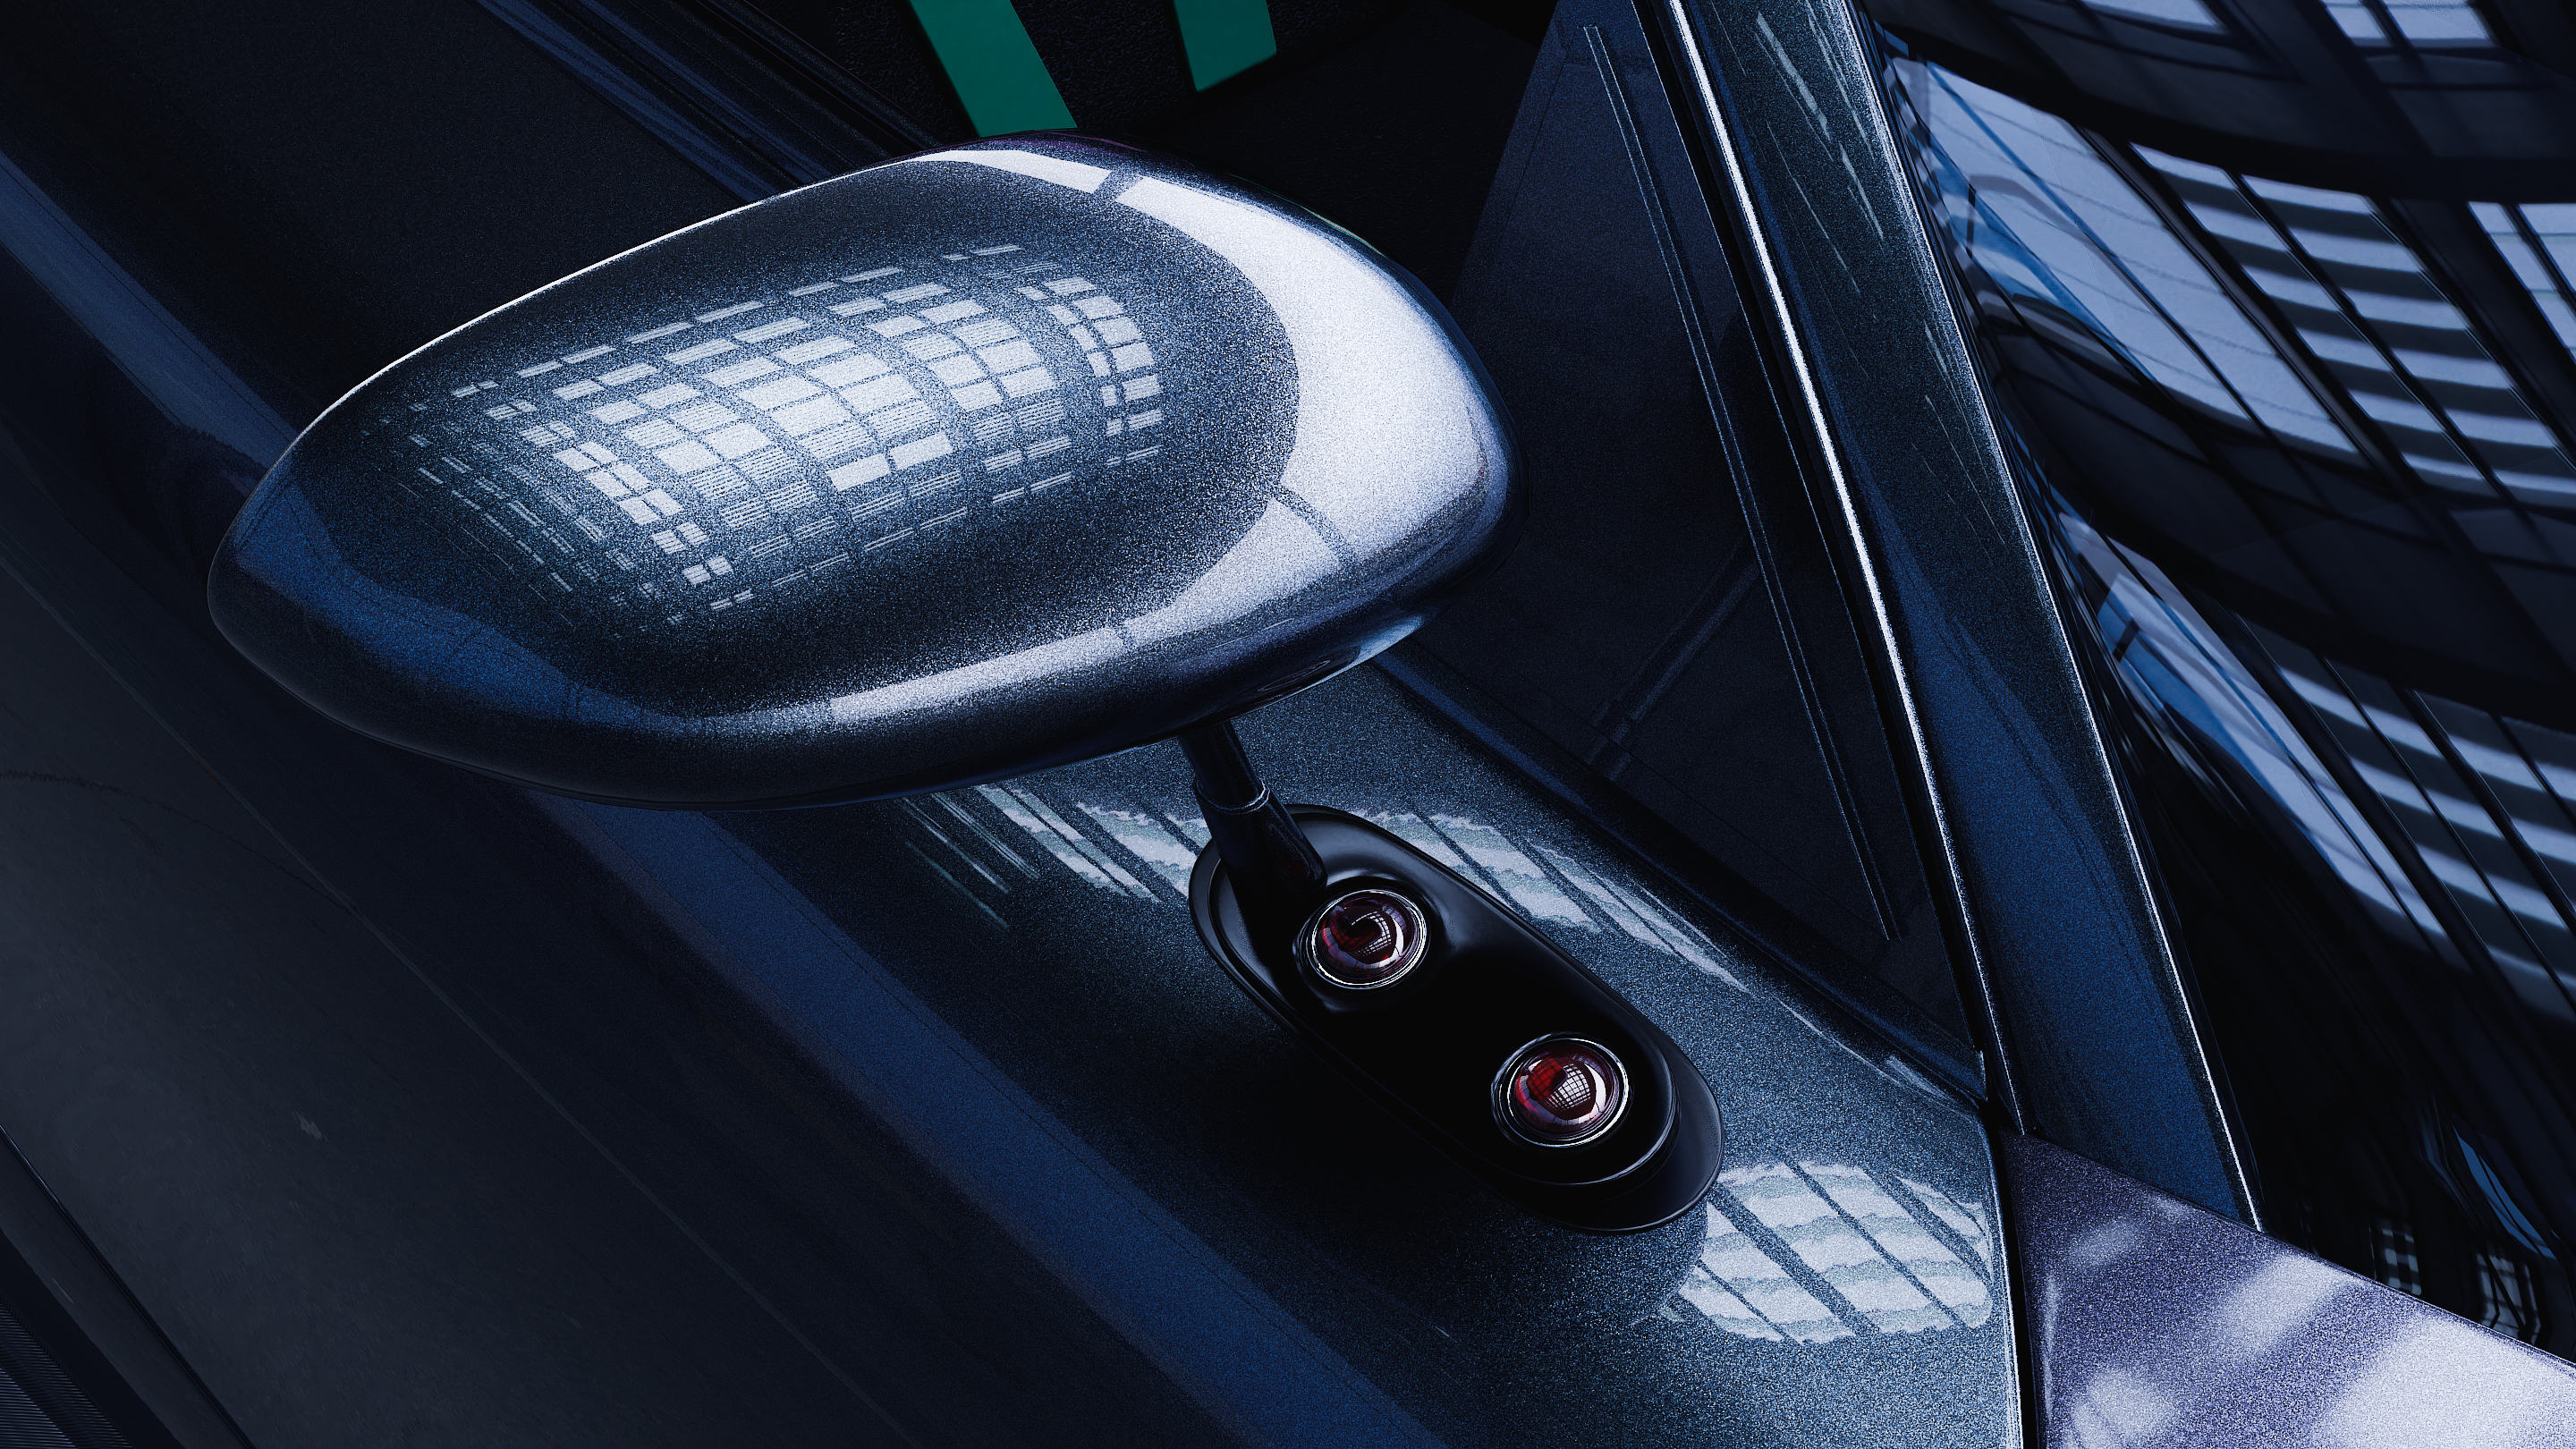 Mazda RX-7 in Blender cycles render Bild